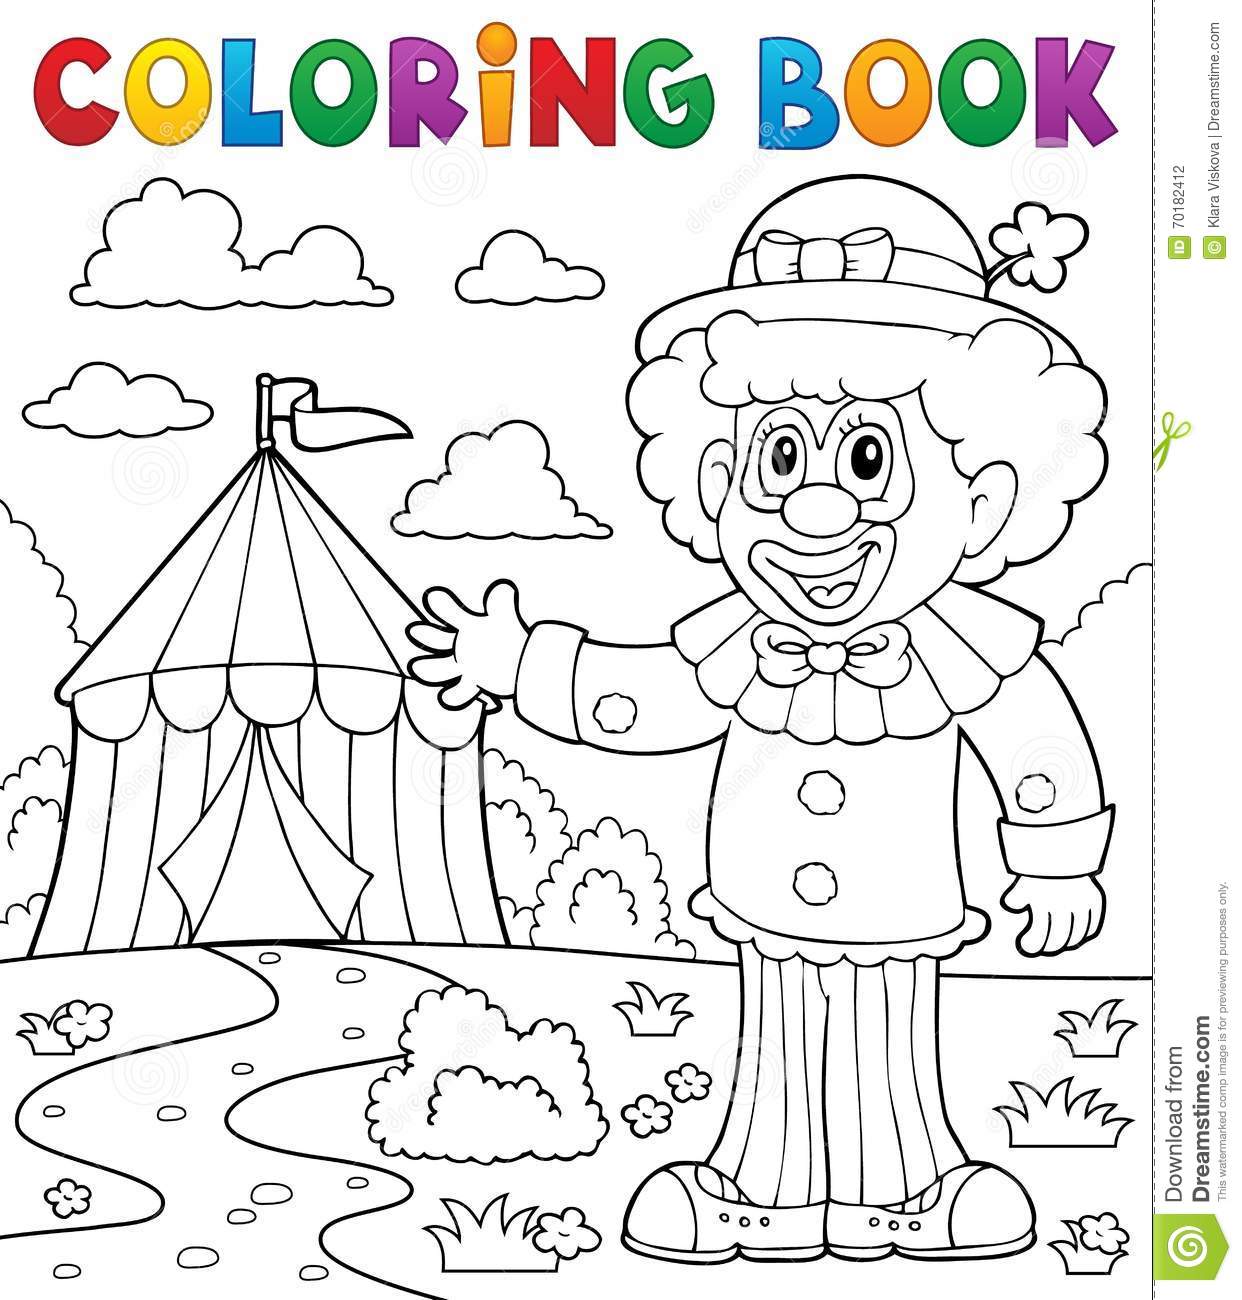 Забавные и интересные раскраски для детей на тему клоун         раскраски для детей и взрослых на тему клоун. Интересные раскраски на тему клоун, цирк, красный нос, шарики. Раскраски на тему клоун         